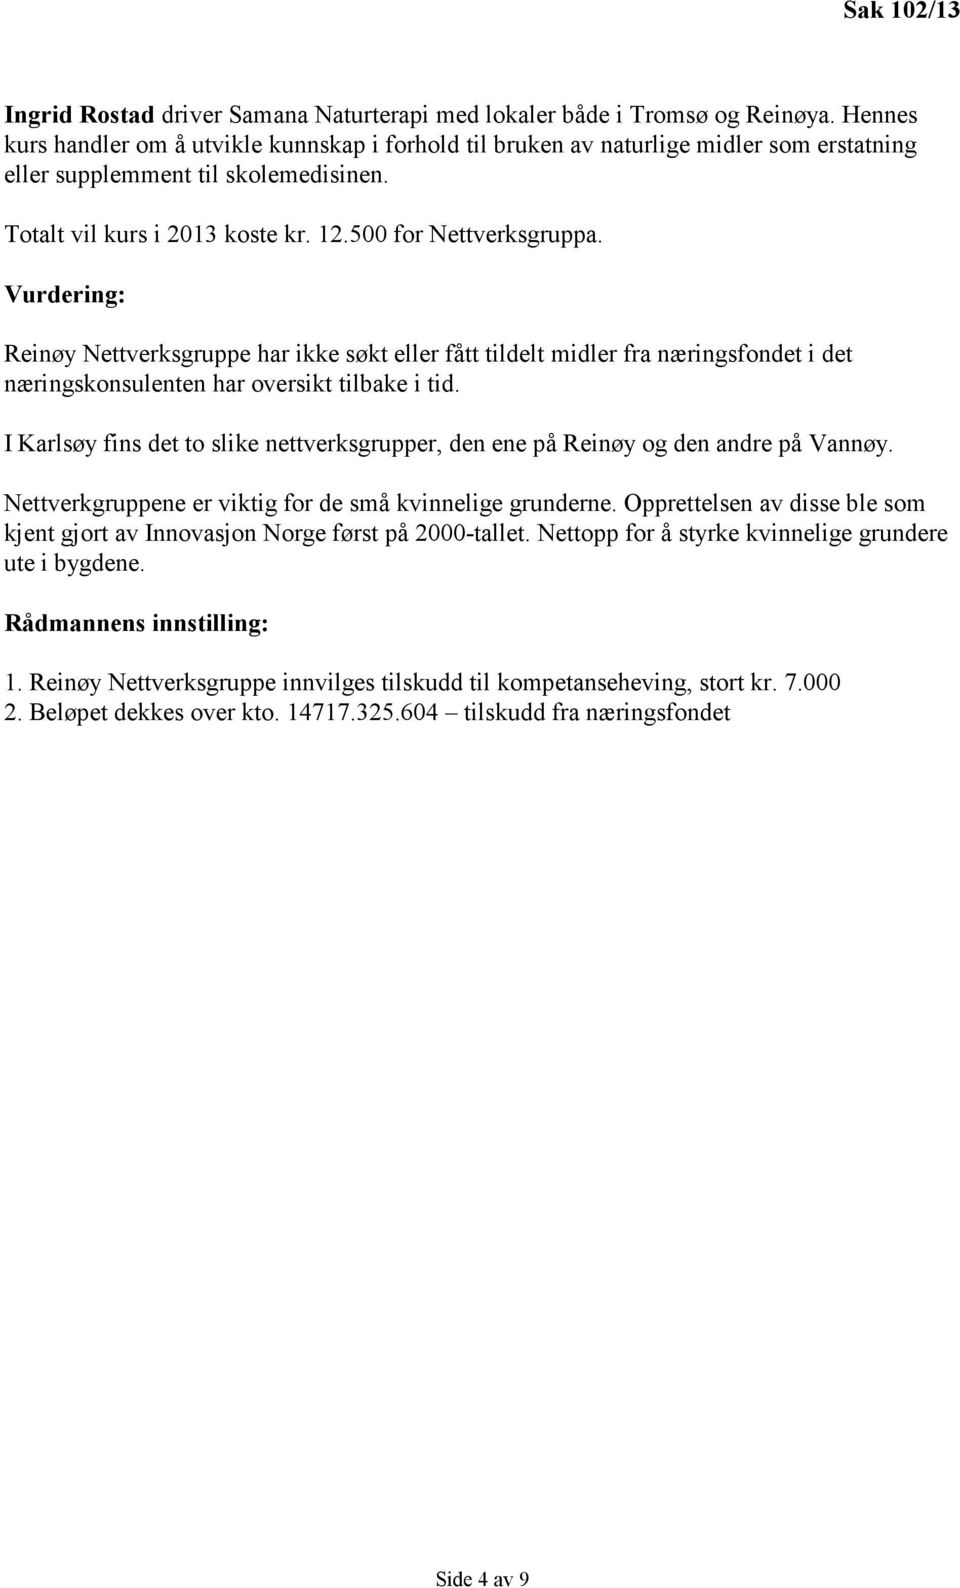 Vurdering: Reinøy Nettverksgruppe har ikke søkt eller fått tildelt midler fra næringsfondet i det næringskonsulenten har oversikt tilbake i tid.